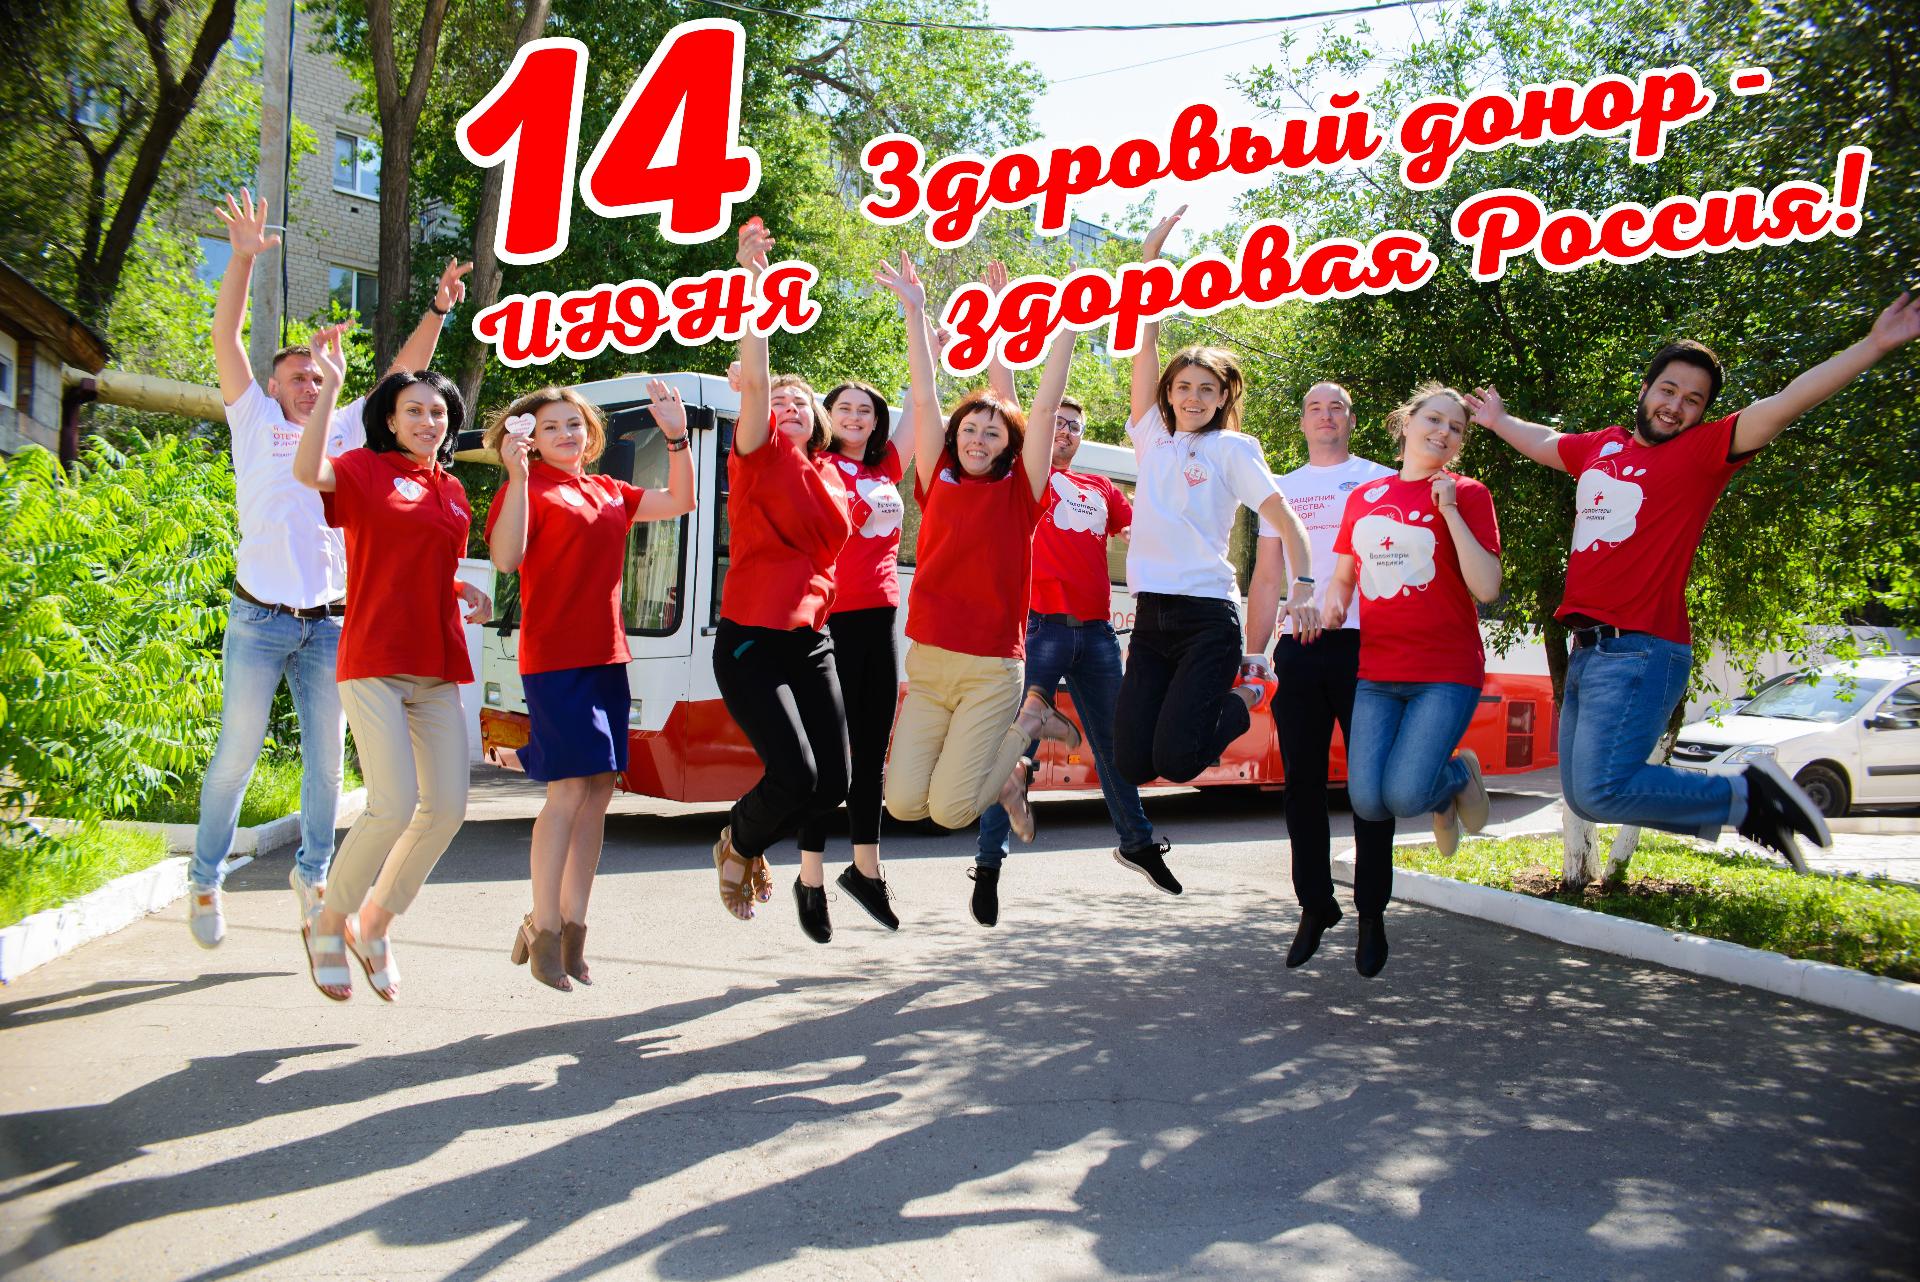 14 июня в  Оренбуржье пройдет праздник -   Всемирный день донора крови